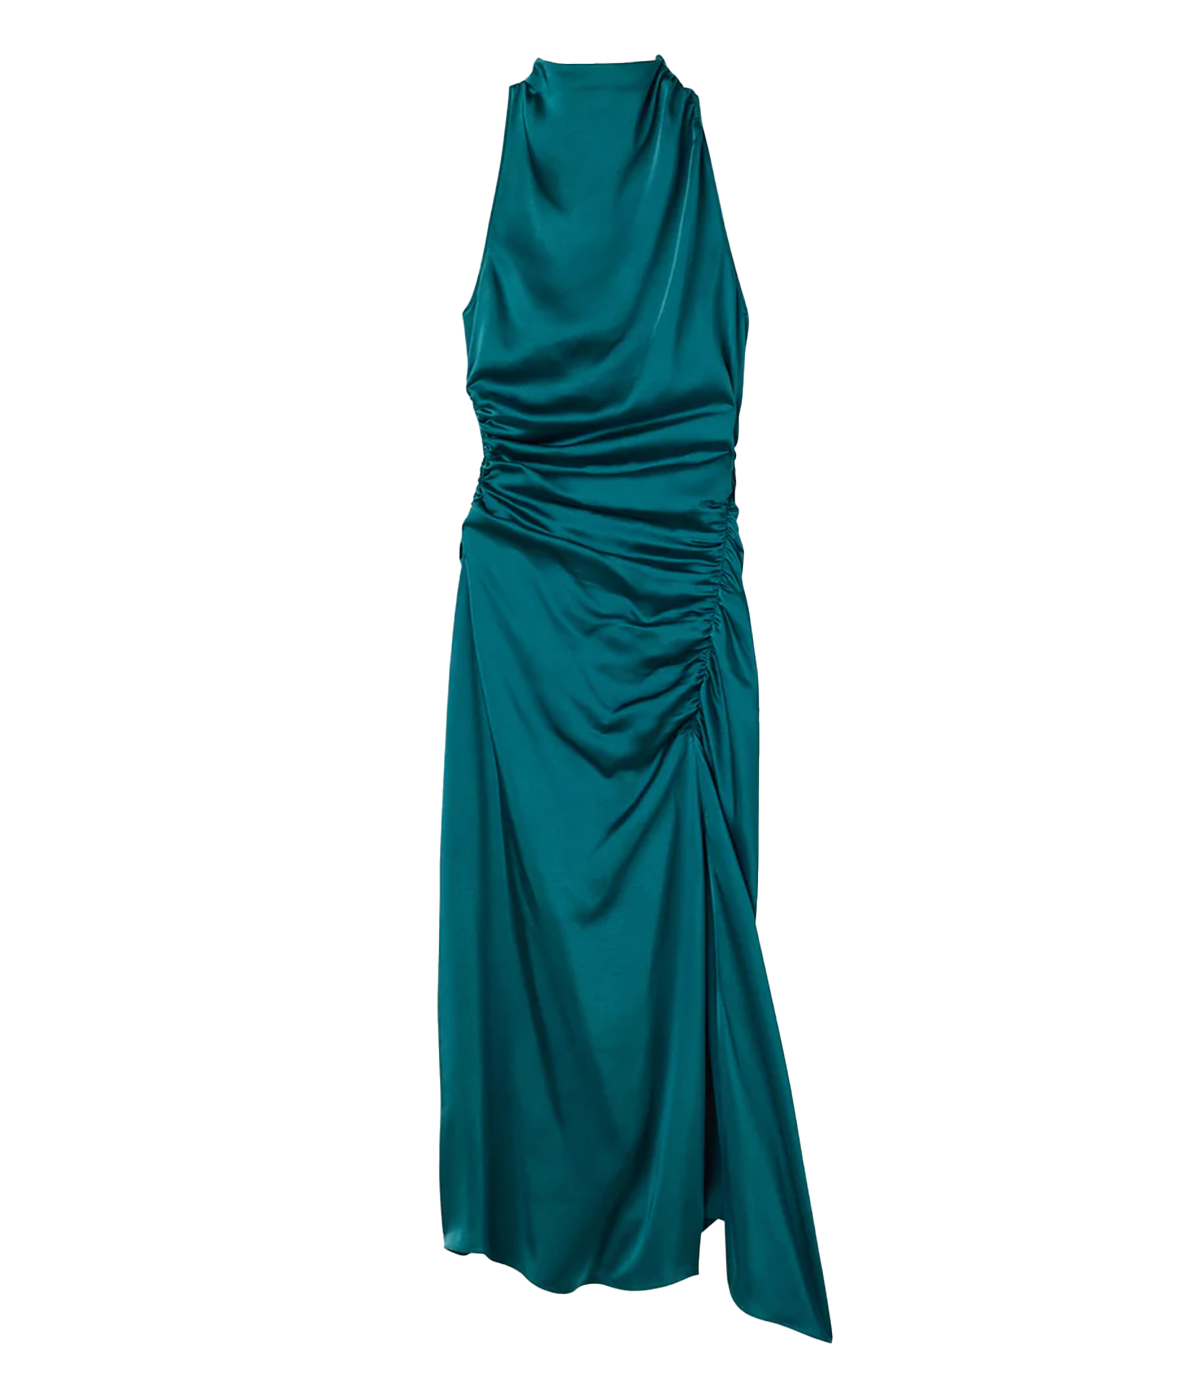 Inez Dress in Emerald